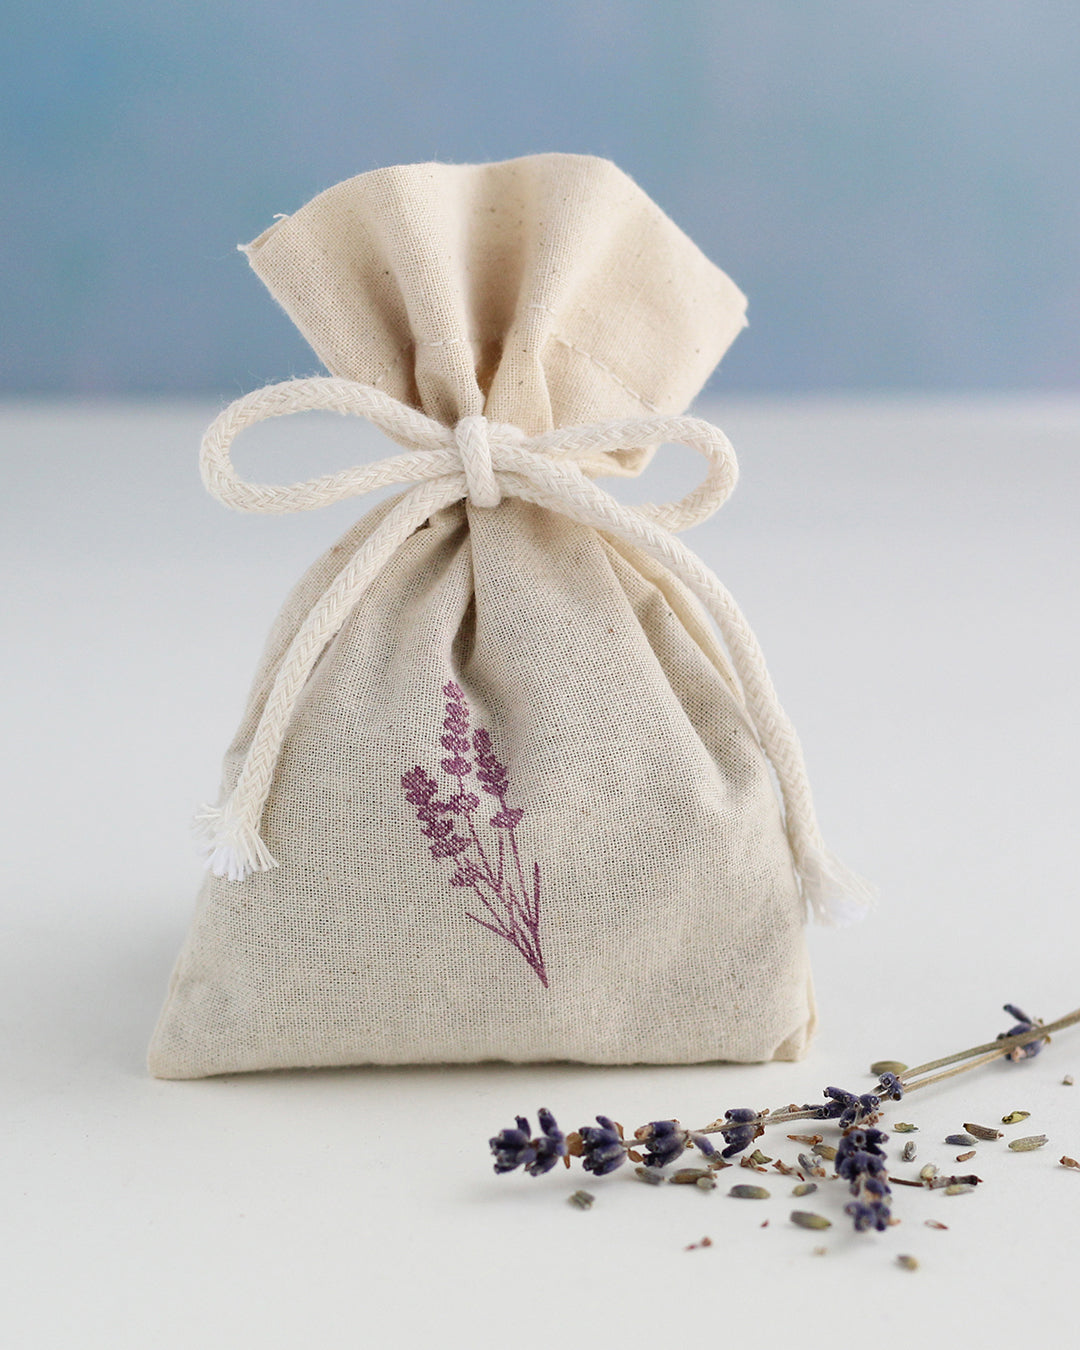 Lavendelsäckchen aus Bio-Baumwolle gefüllt mit Bio-Lavendelblüten aus lokalem Anbau in Spanien